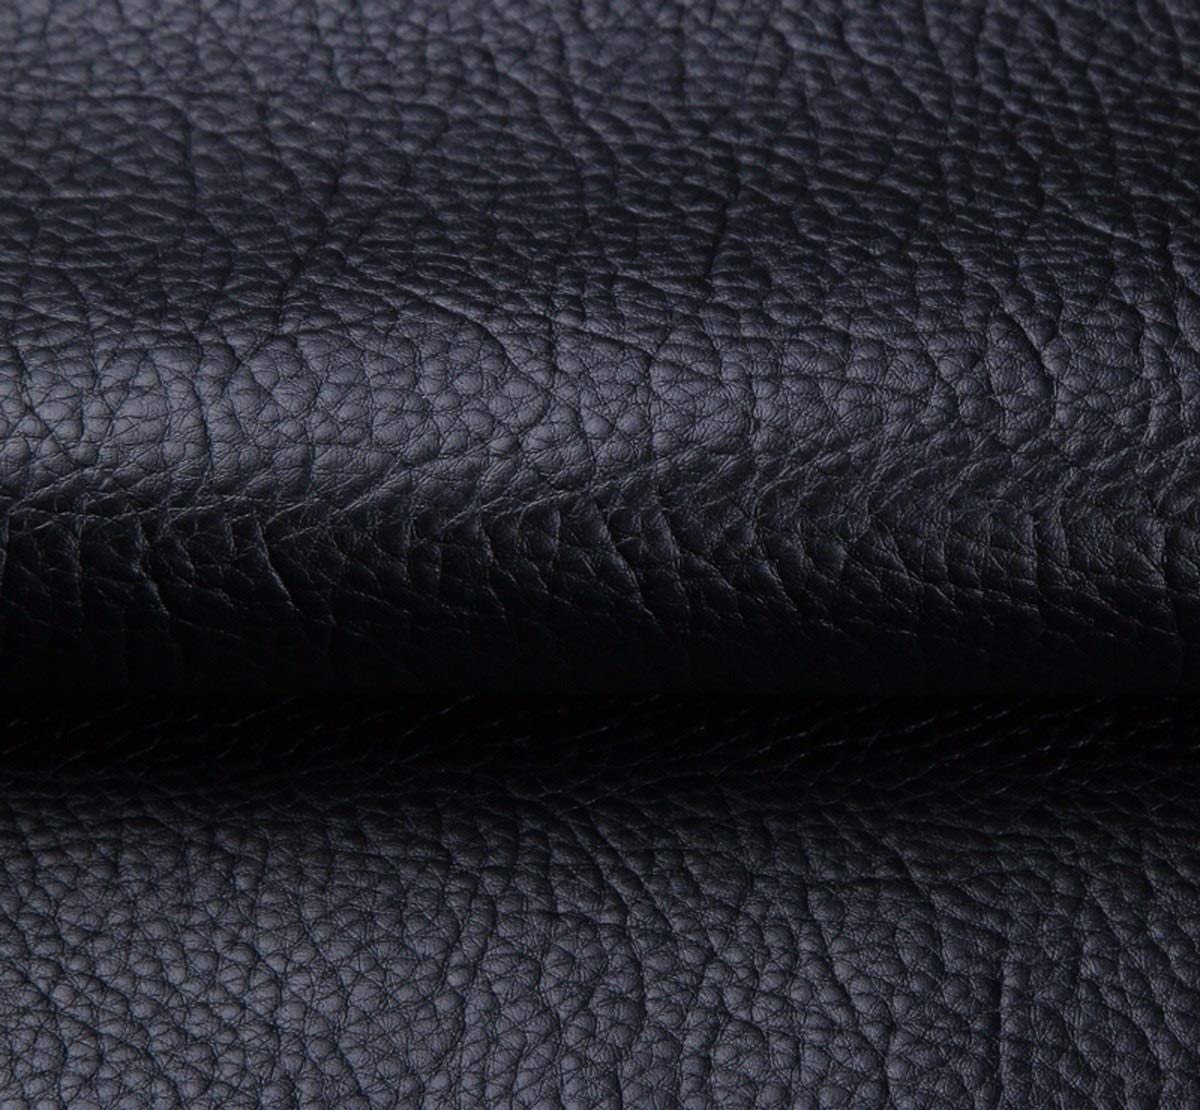 chic  Tissu Simili Cuir Imperméable Tissu D´ameublement Tapisserie pour Canapé De Siège De Voiture Meubles Vestes Sac À Main Tissu Au Metre 140 CM (Largeur Fixe) (Color : Black) sa4YJuCqt grand